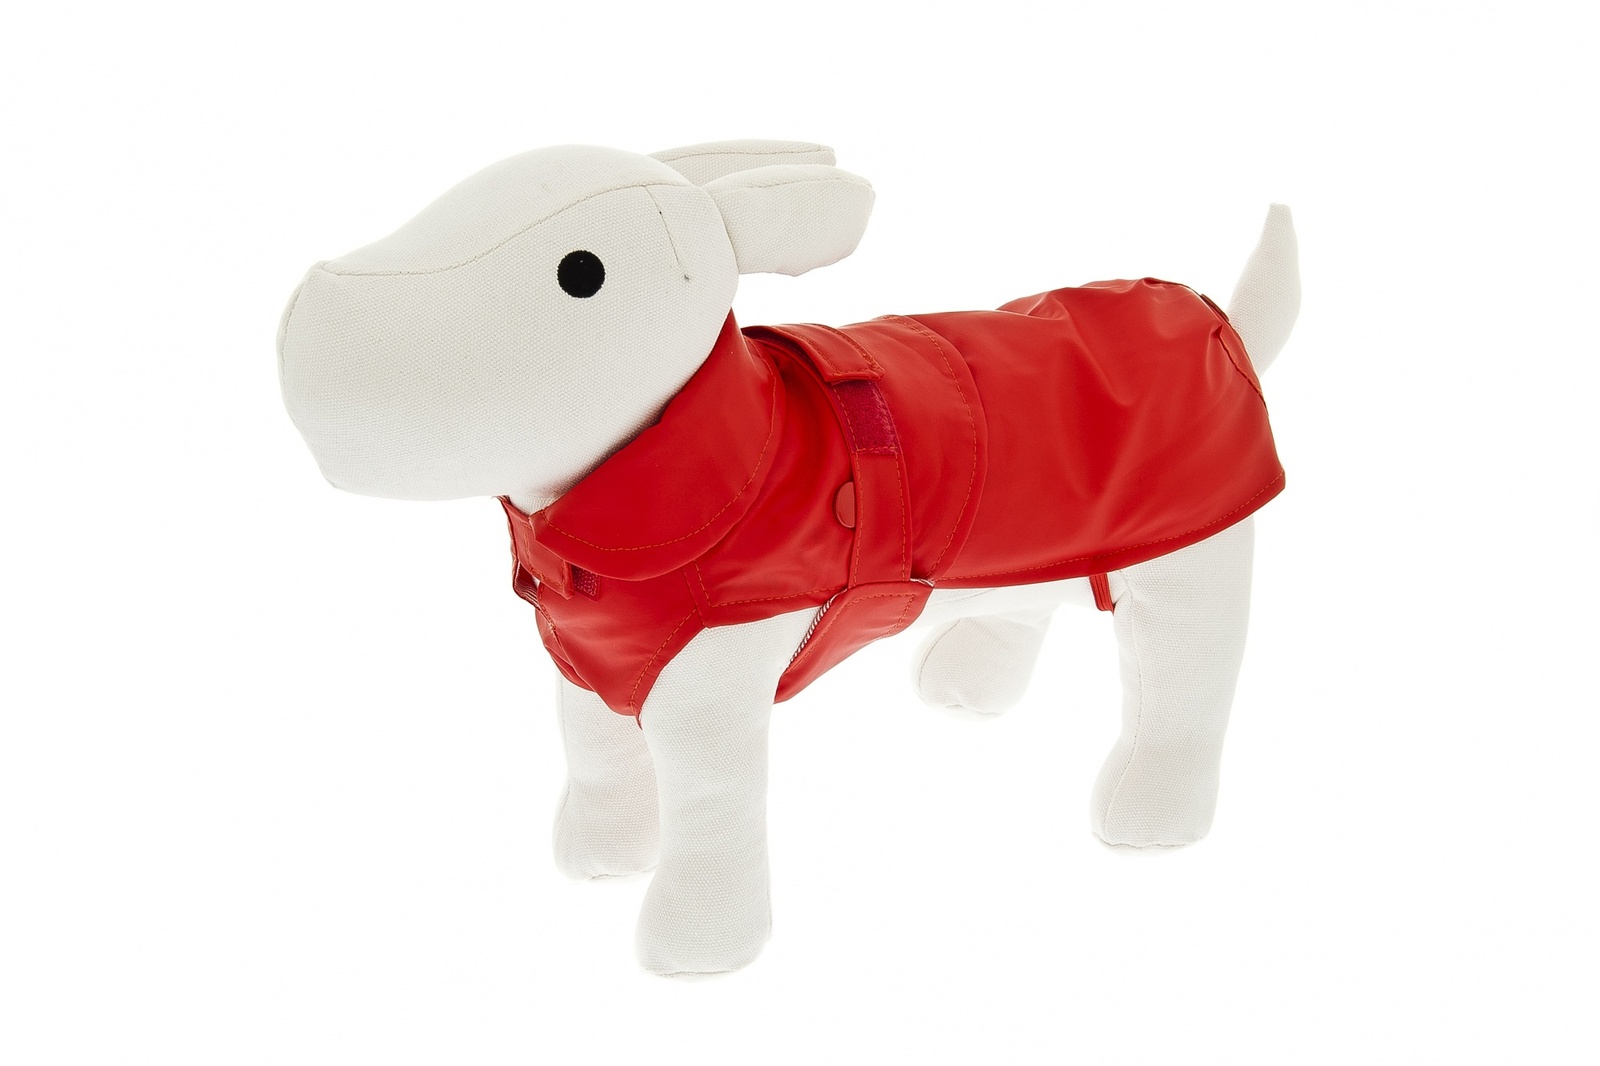 Ferribiella одежда Ferribiella одежда утепленный плащ-дождевик со съемным подкладом Лана, красный (20 см) 46359